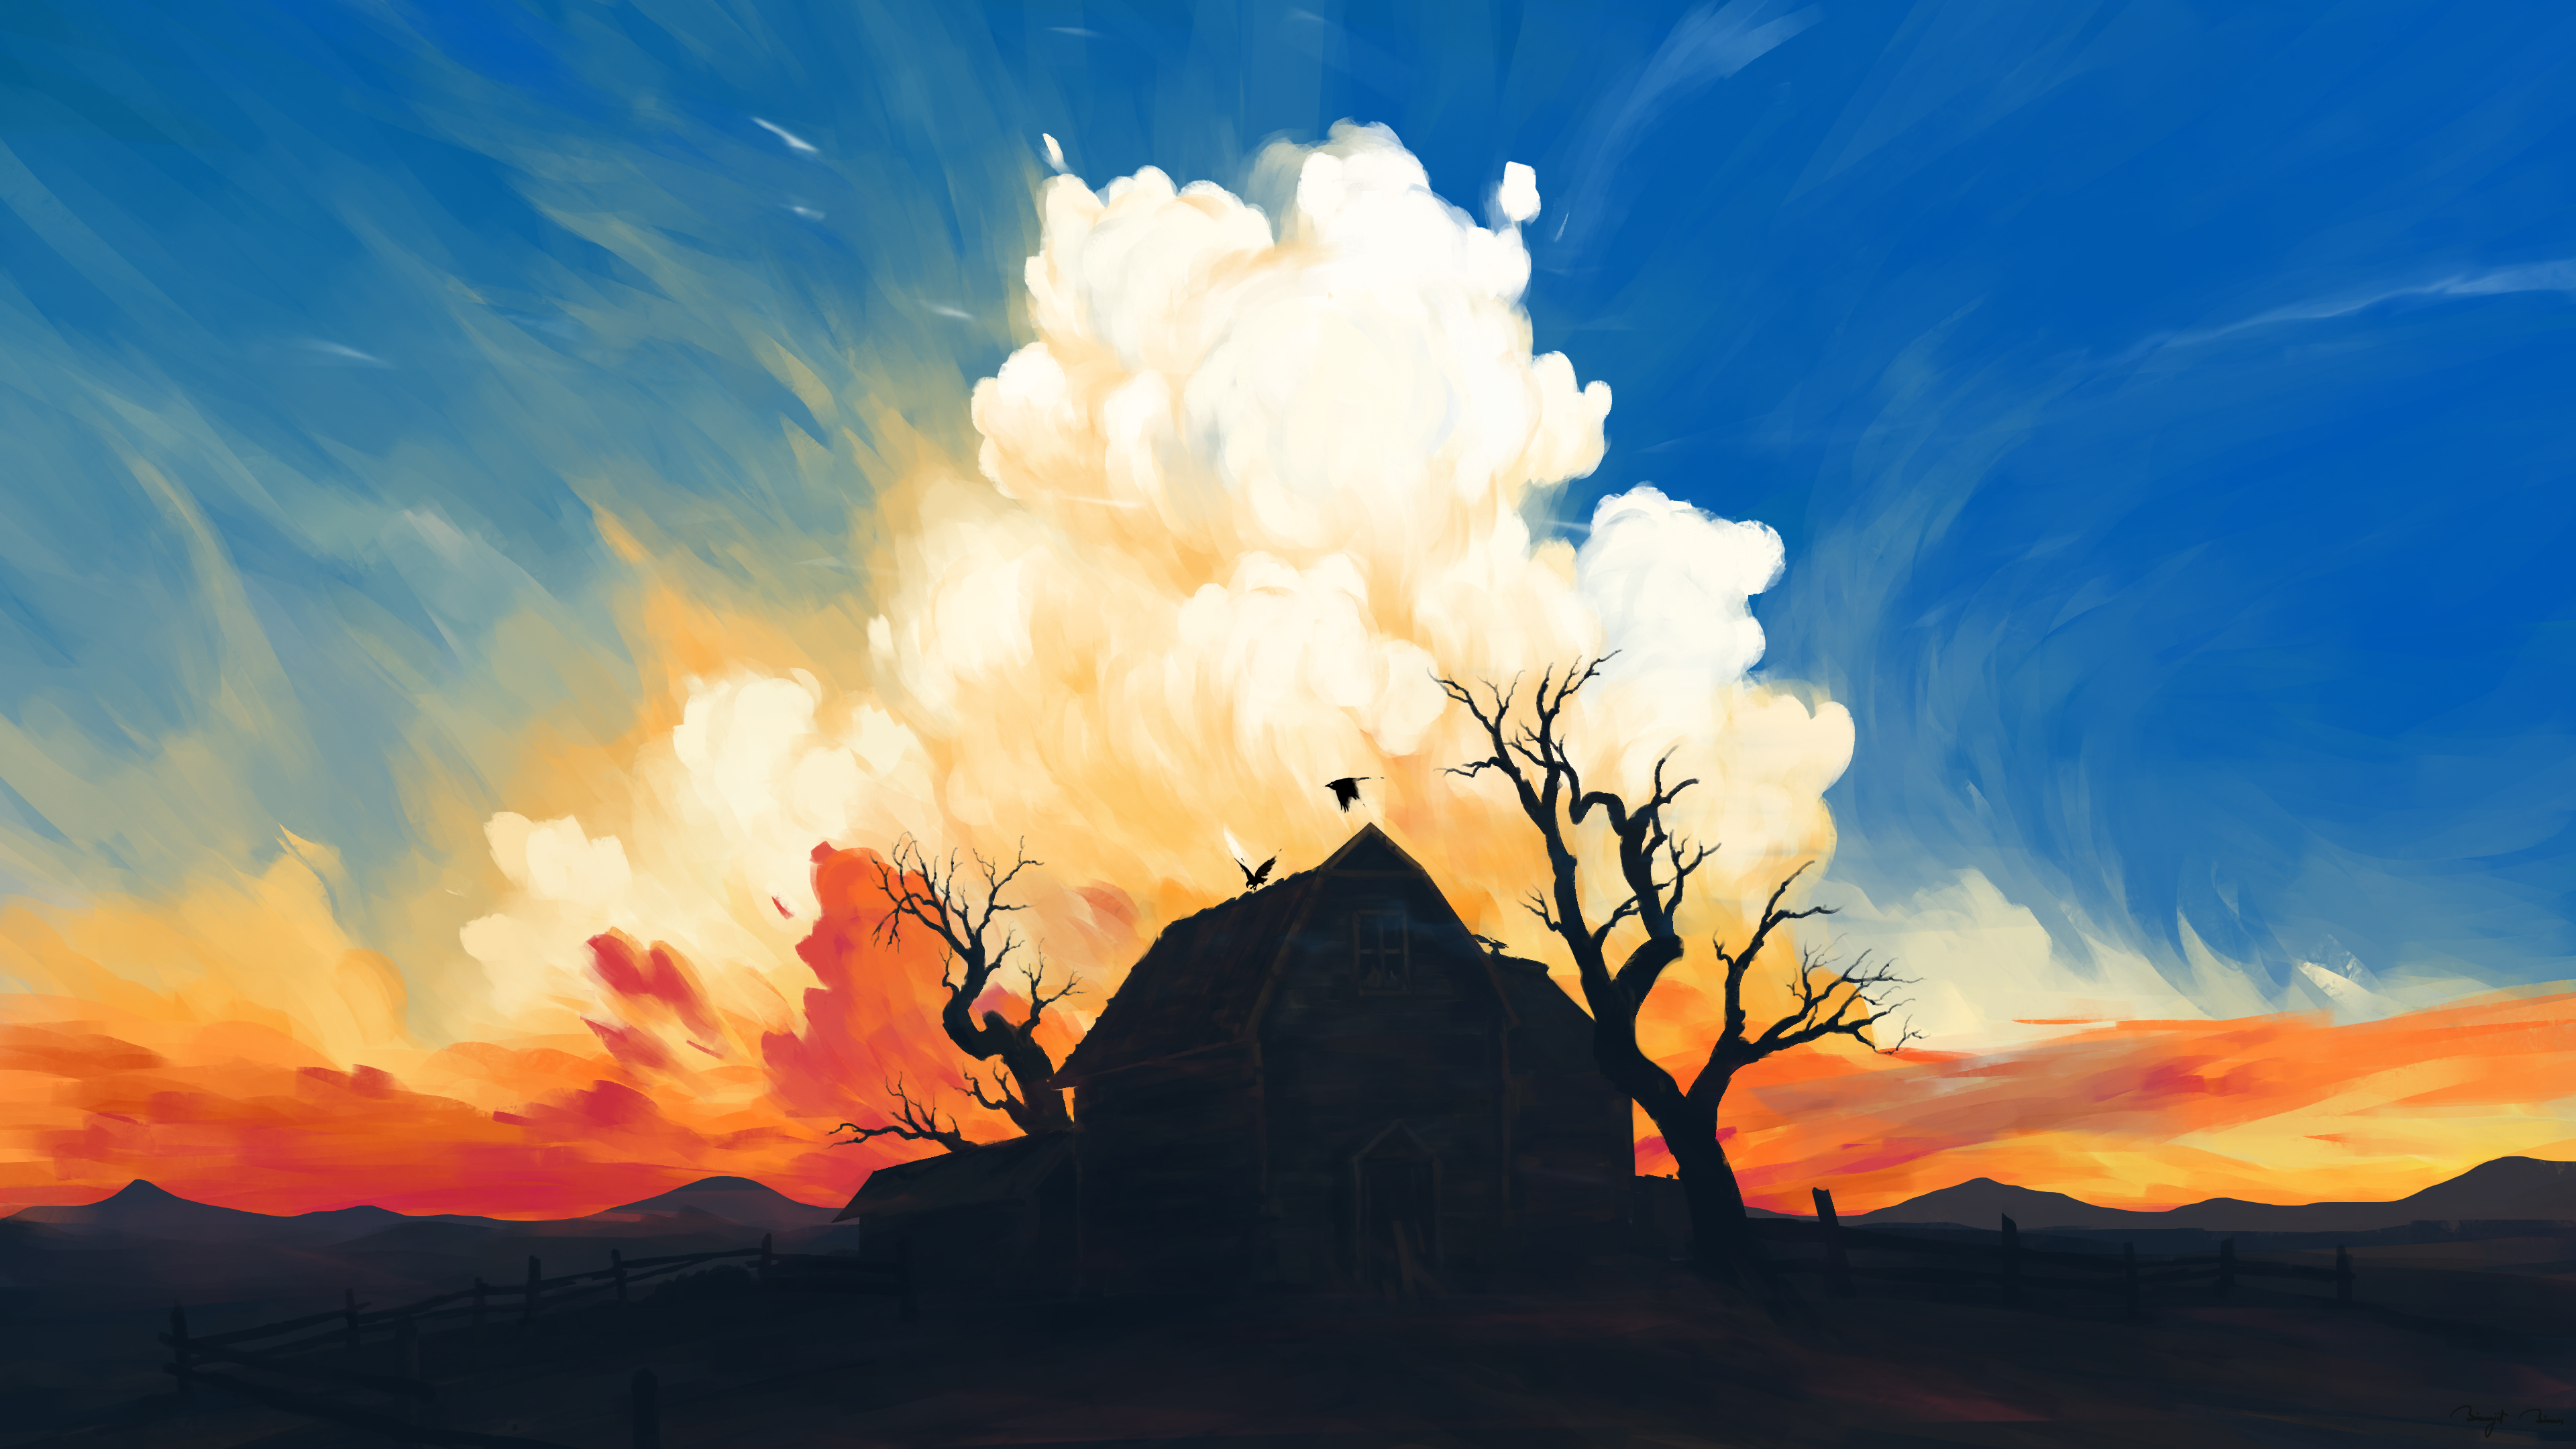 BisBiswas Digital Art Artwork Illustration Landscape Clouds 4K House Abandoned Sky Trees Birds Natur 3840x2160